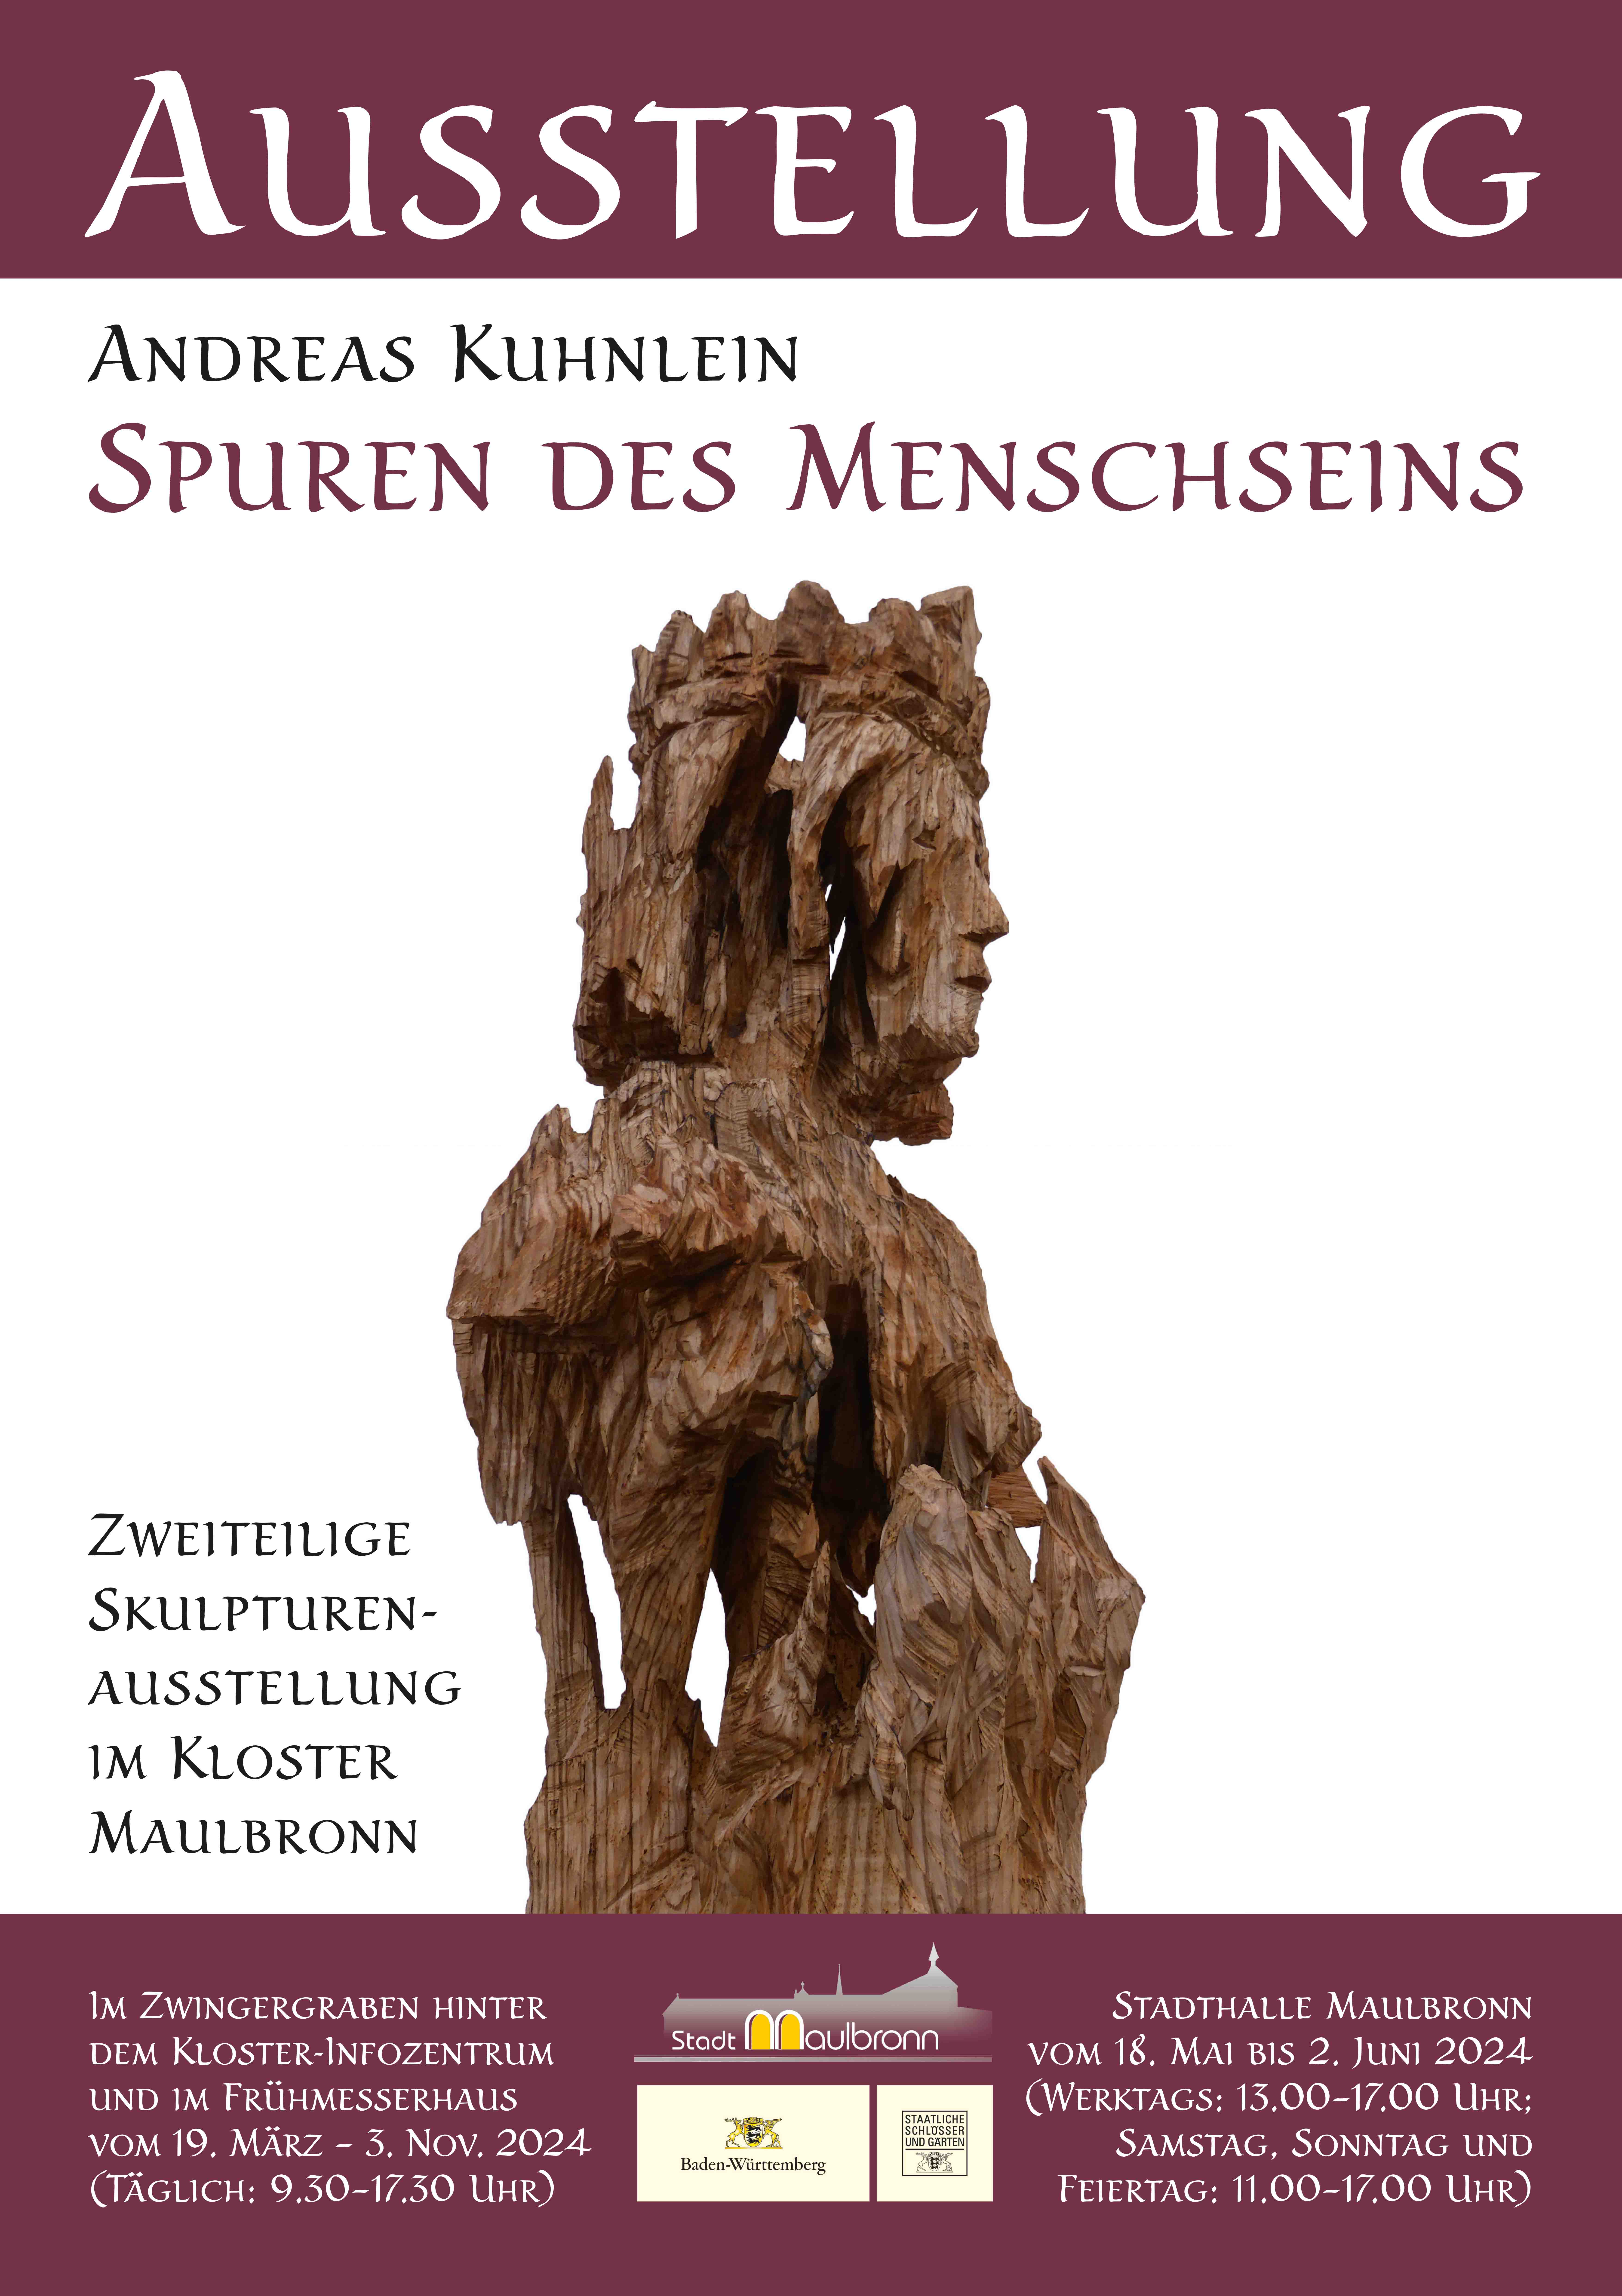 Eine Holzskulptur, die eine Königin darstellt auf weißem Grund. Dazu der Text: Ausstellung Andreas Kuhnlein - Spuren des Menschen. Zweiteilige Skulpturenaustellung im Kloster Maulbronn